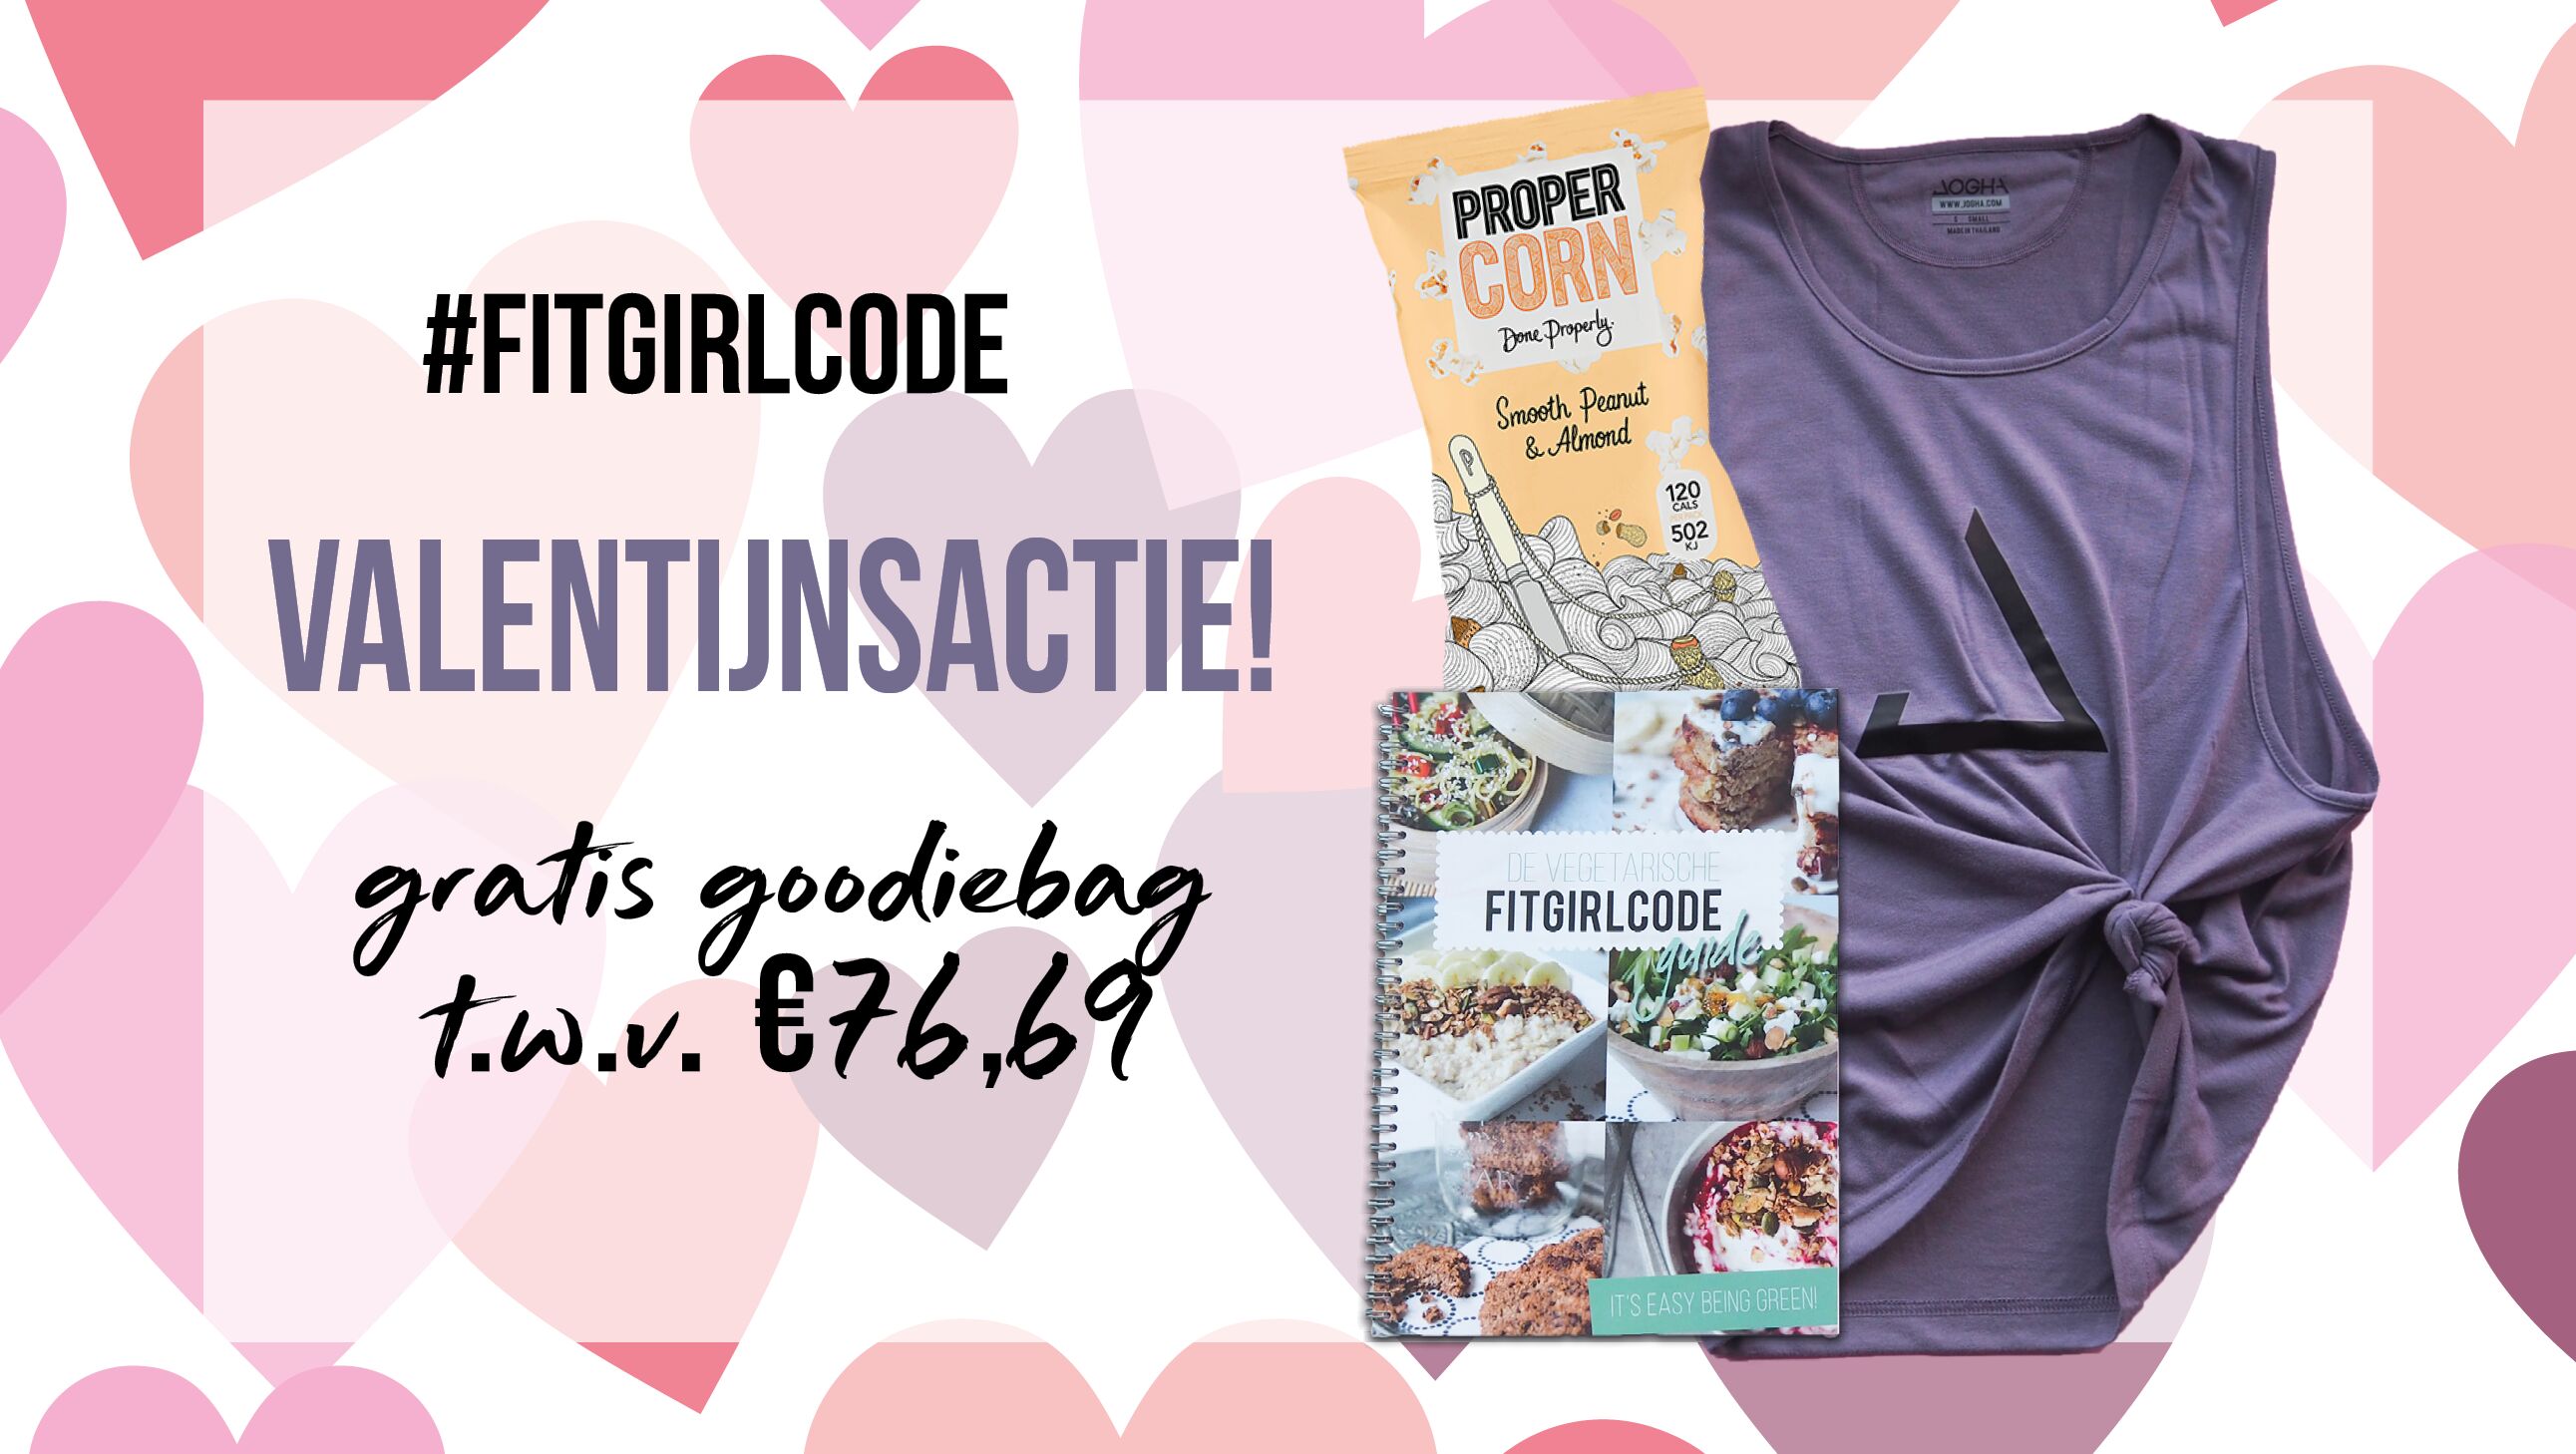 Fitgirlcode trakteert op goedgevulde goodiebags voor valentijn!